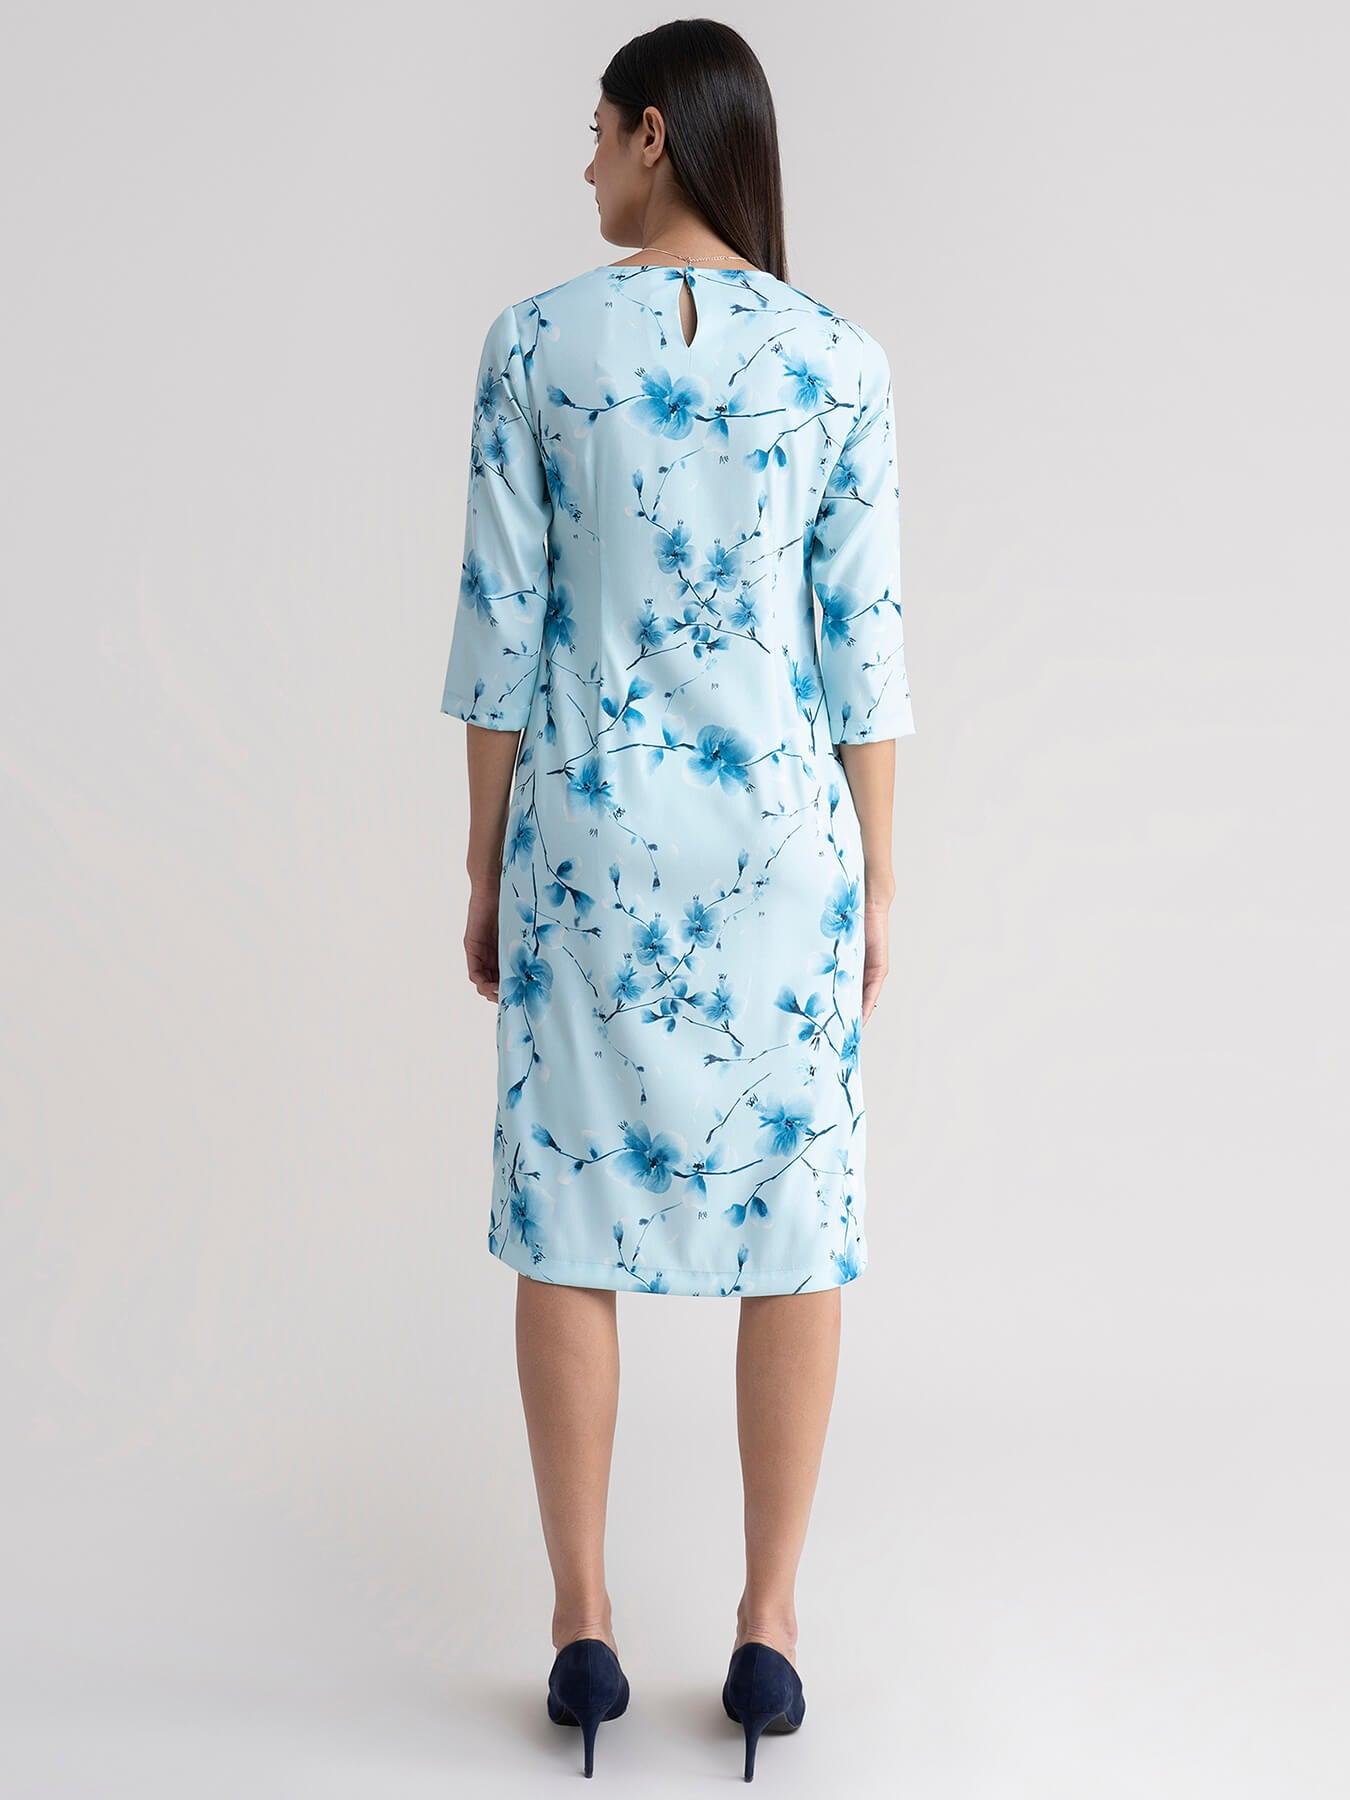 Floral Shift Dress - Blue| Formal Dresses